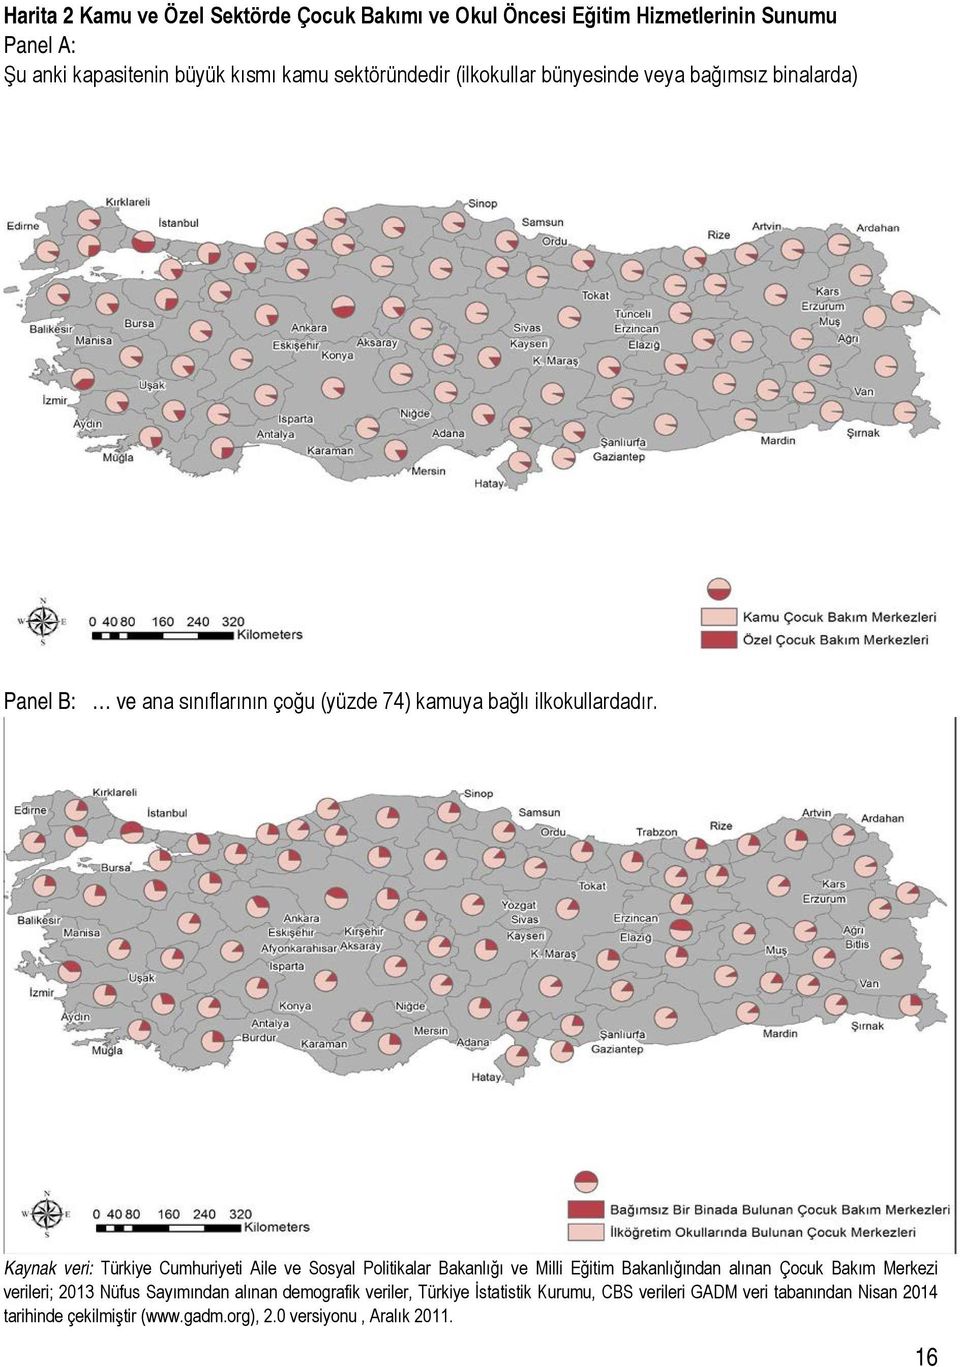 Kaynak veri: Türkiye Cumhuriyeti Aile ve Sosyal Politikalar Bakanlığı ve Milli Eğitim Bakanlığından alınan Çocuk Bakım Merkezi verileri; 2013 Nüfus